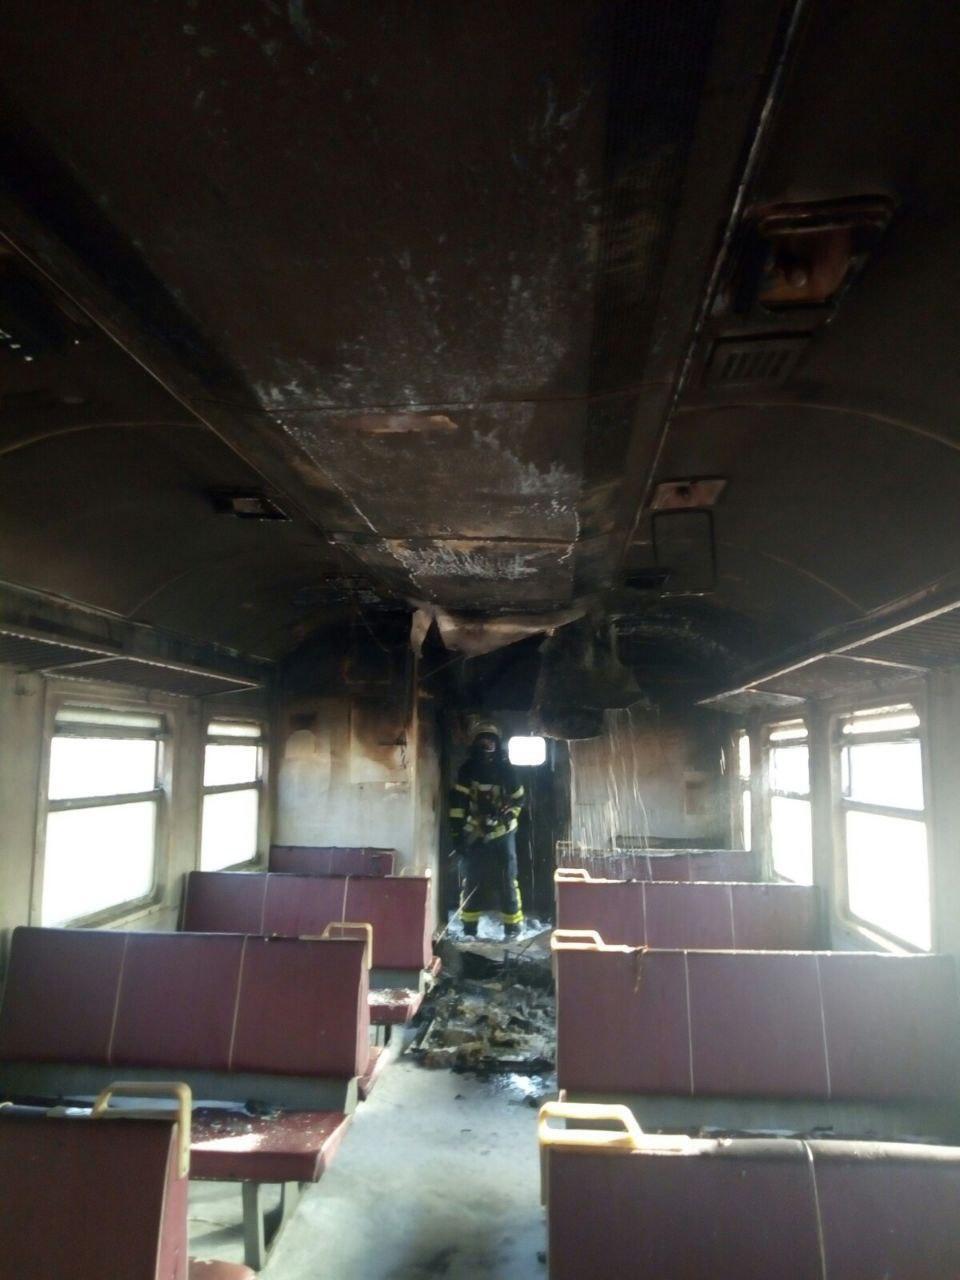 м. Київ: ліквідовано пожежу у вагоні електричного поїзду